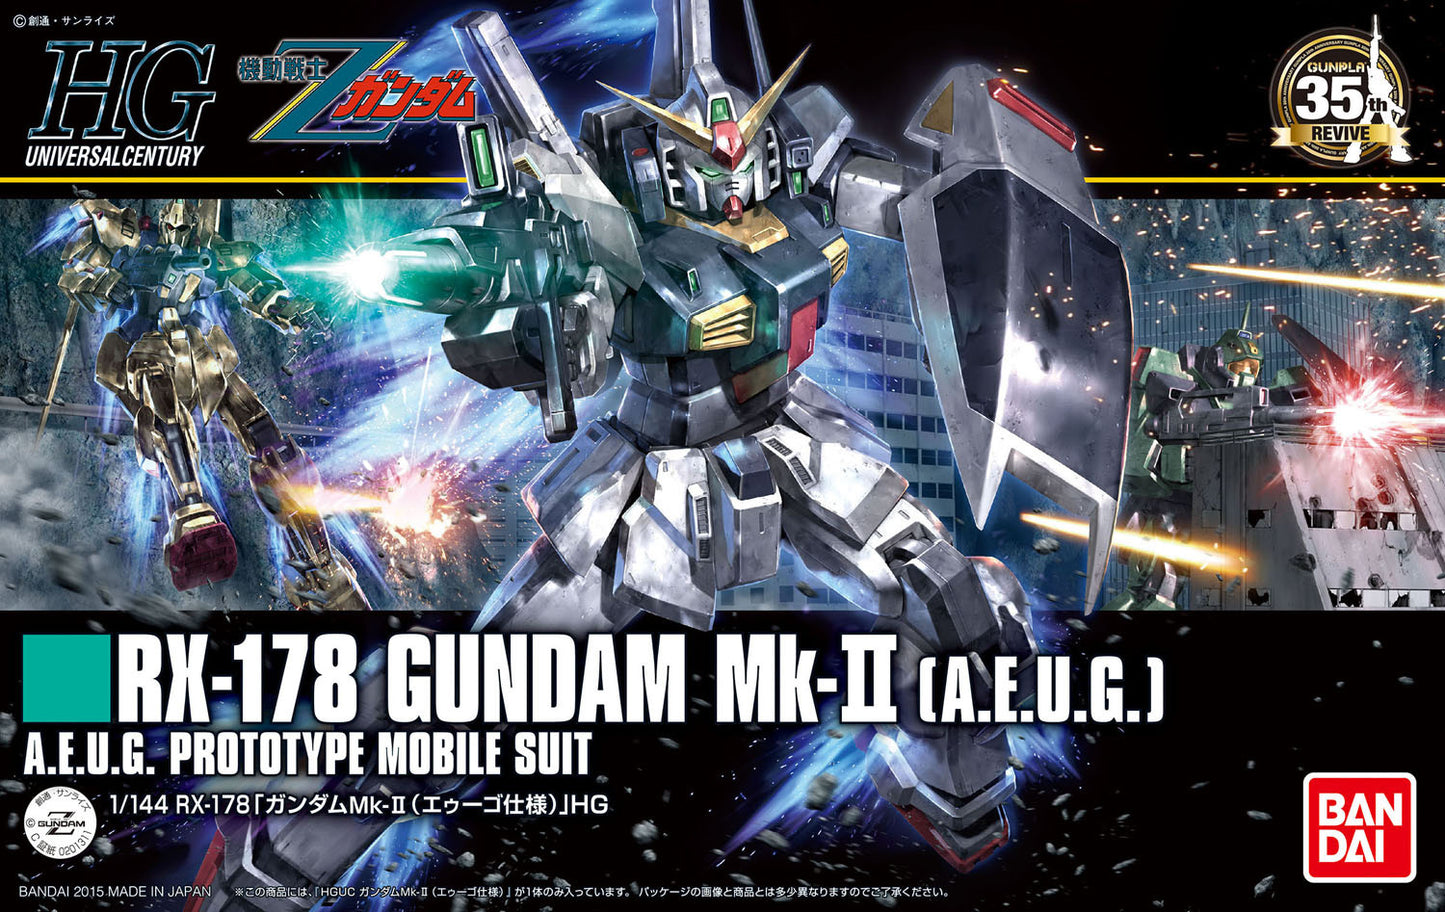 HGUC 1/144 #193 RX-178 Gundam MK-II A.E.U.G [Revive Ver.]